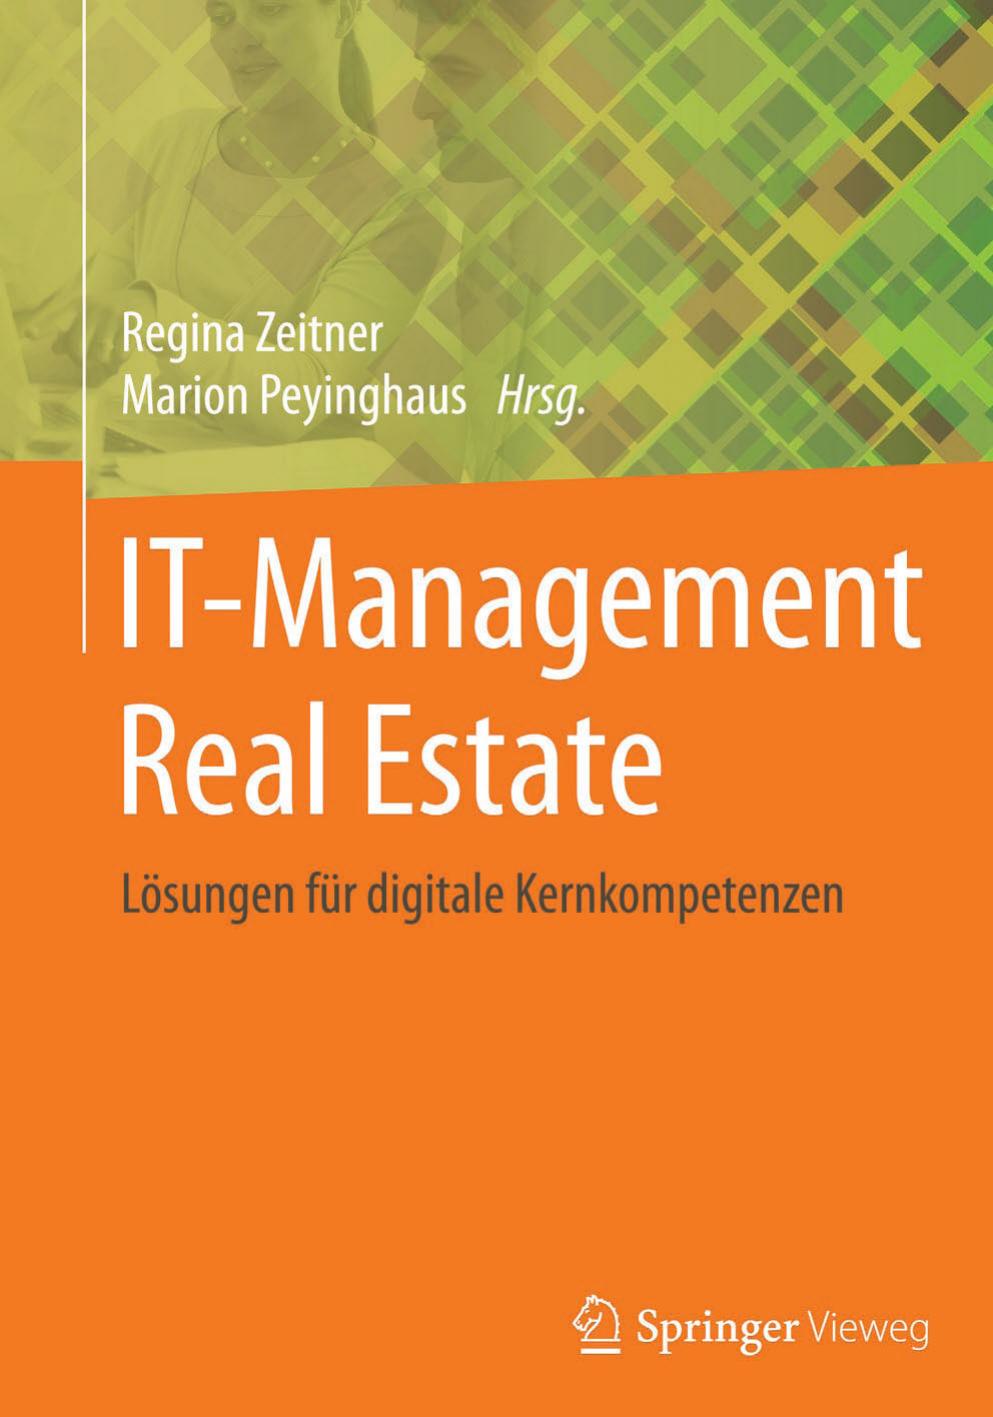 IT-Management Real Estate  Lösungen für digitale Kernkompetenzen, (2015)